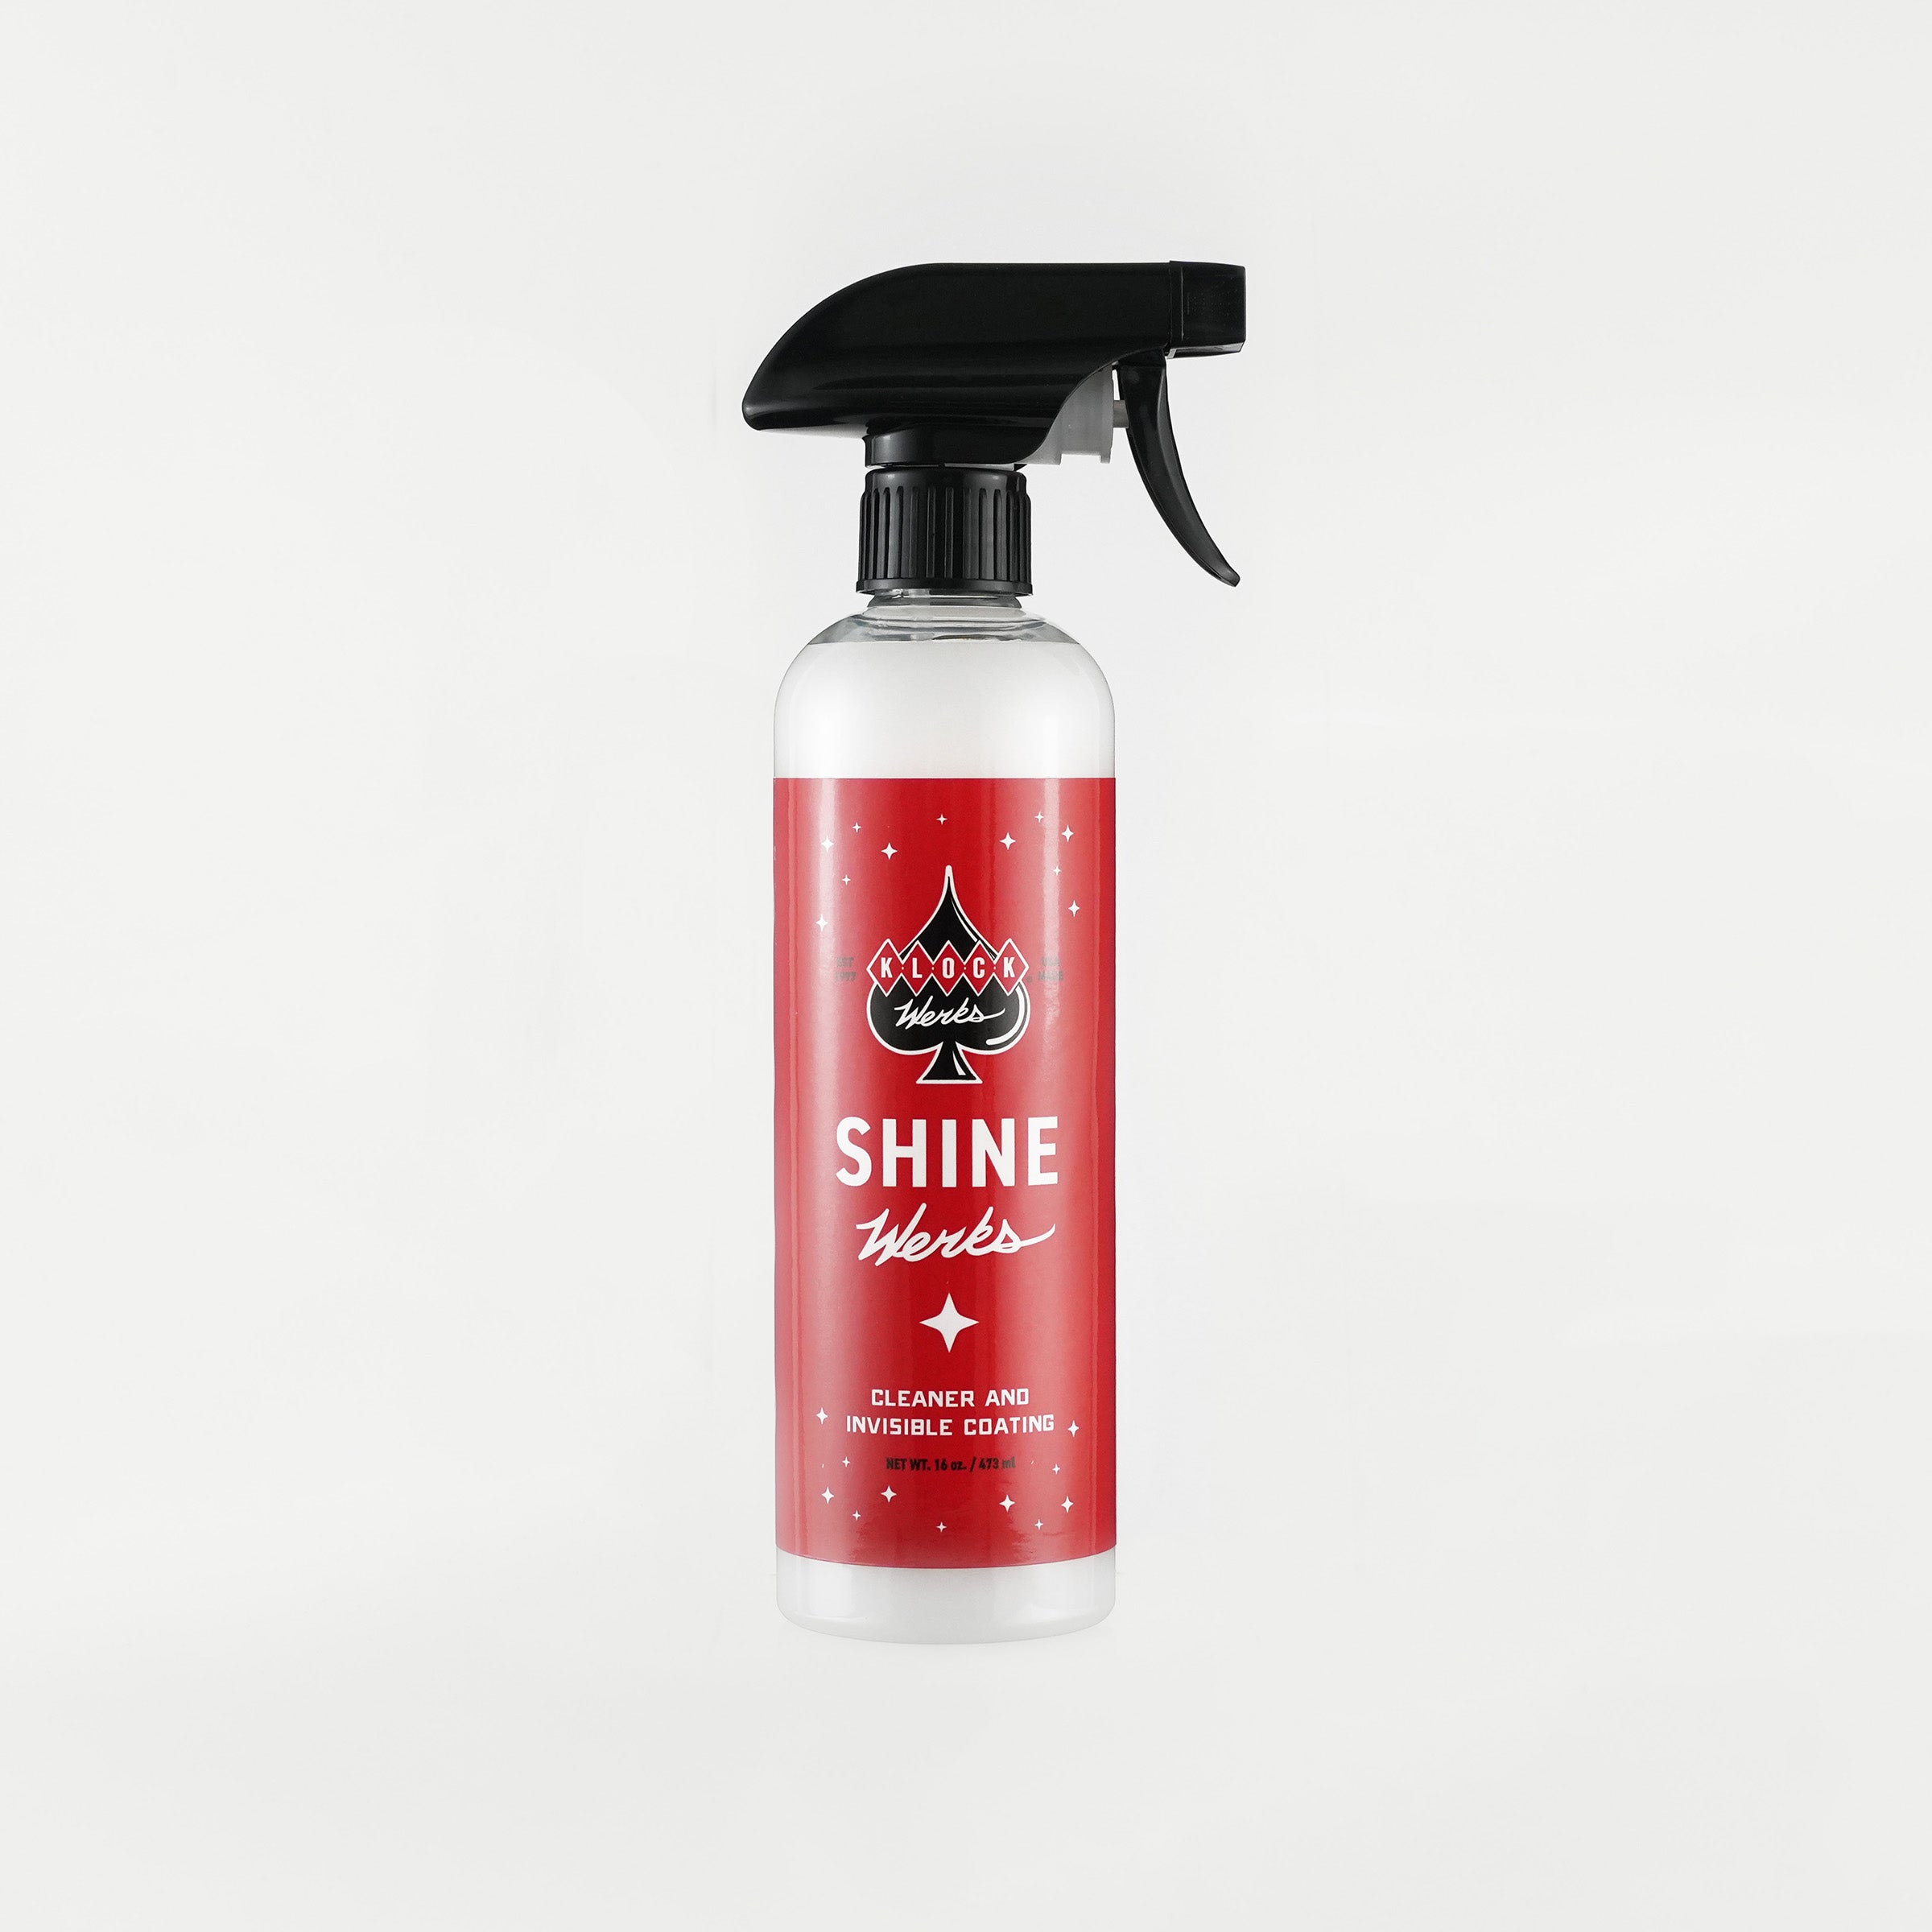 16 oz Shine Werks cleaning and polishing product bottle(16 oz. Shine Werks)